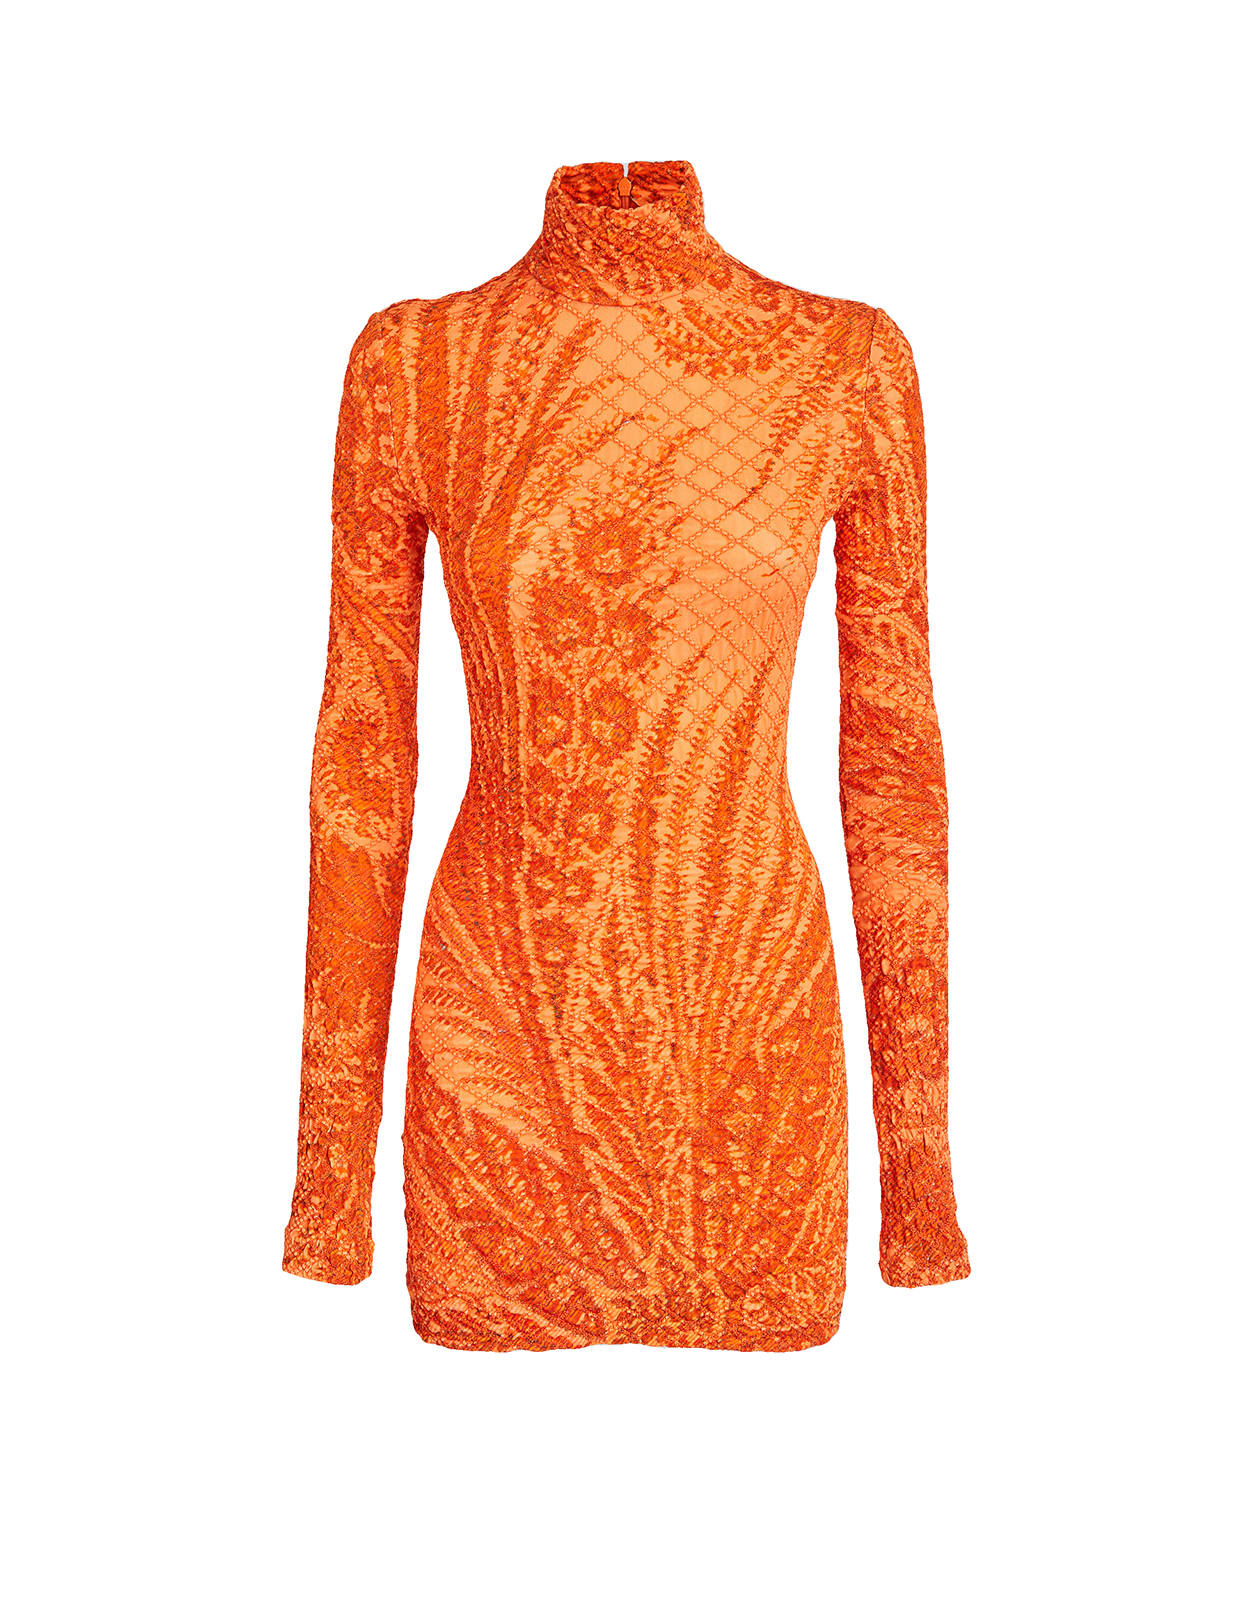 Etro Short Orange Dress With Paisley Foliage Print